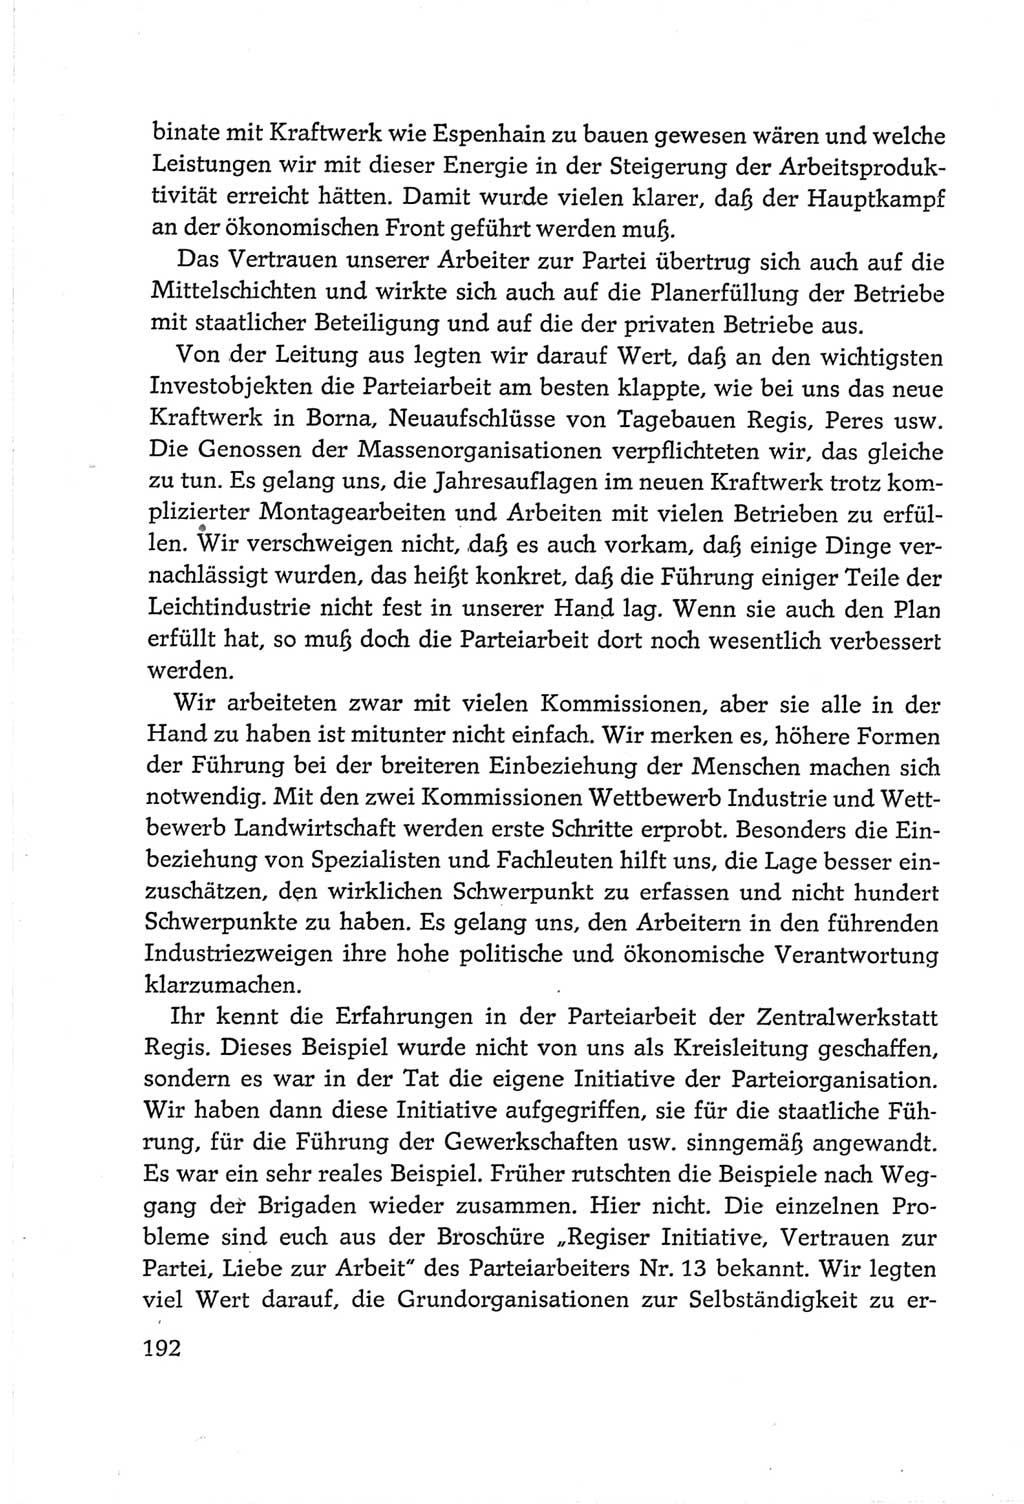 Protokoll der Verhandlungen des Ⅵ. Parteitages der Sozialistischen Einheitspartei Deutschlands (SED) [Deutsche Demokratische Republik (DDR)] 1963, Band Ⅲ, Seite 192 (Prot. Verh. Ⅵ. PT SED DDR 1963, Bd. Ⅲ, S. 192)